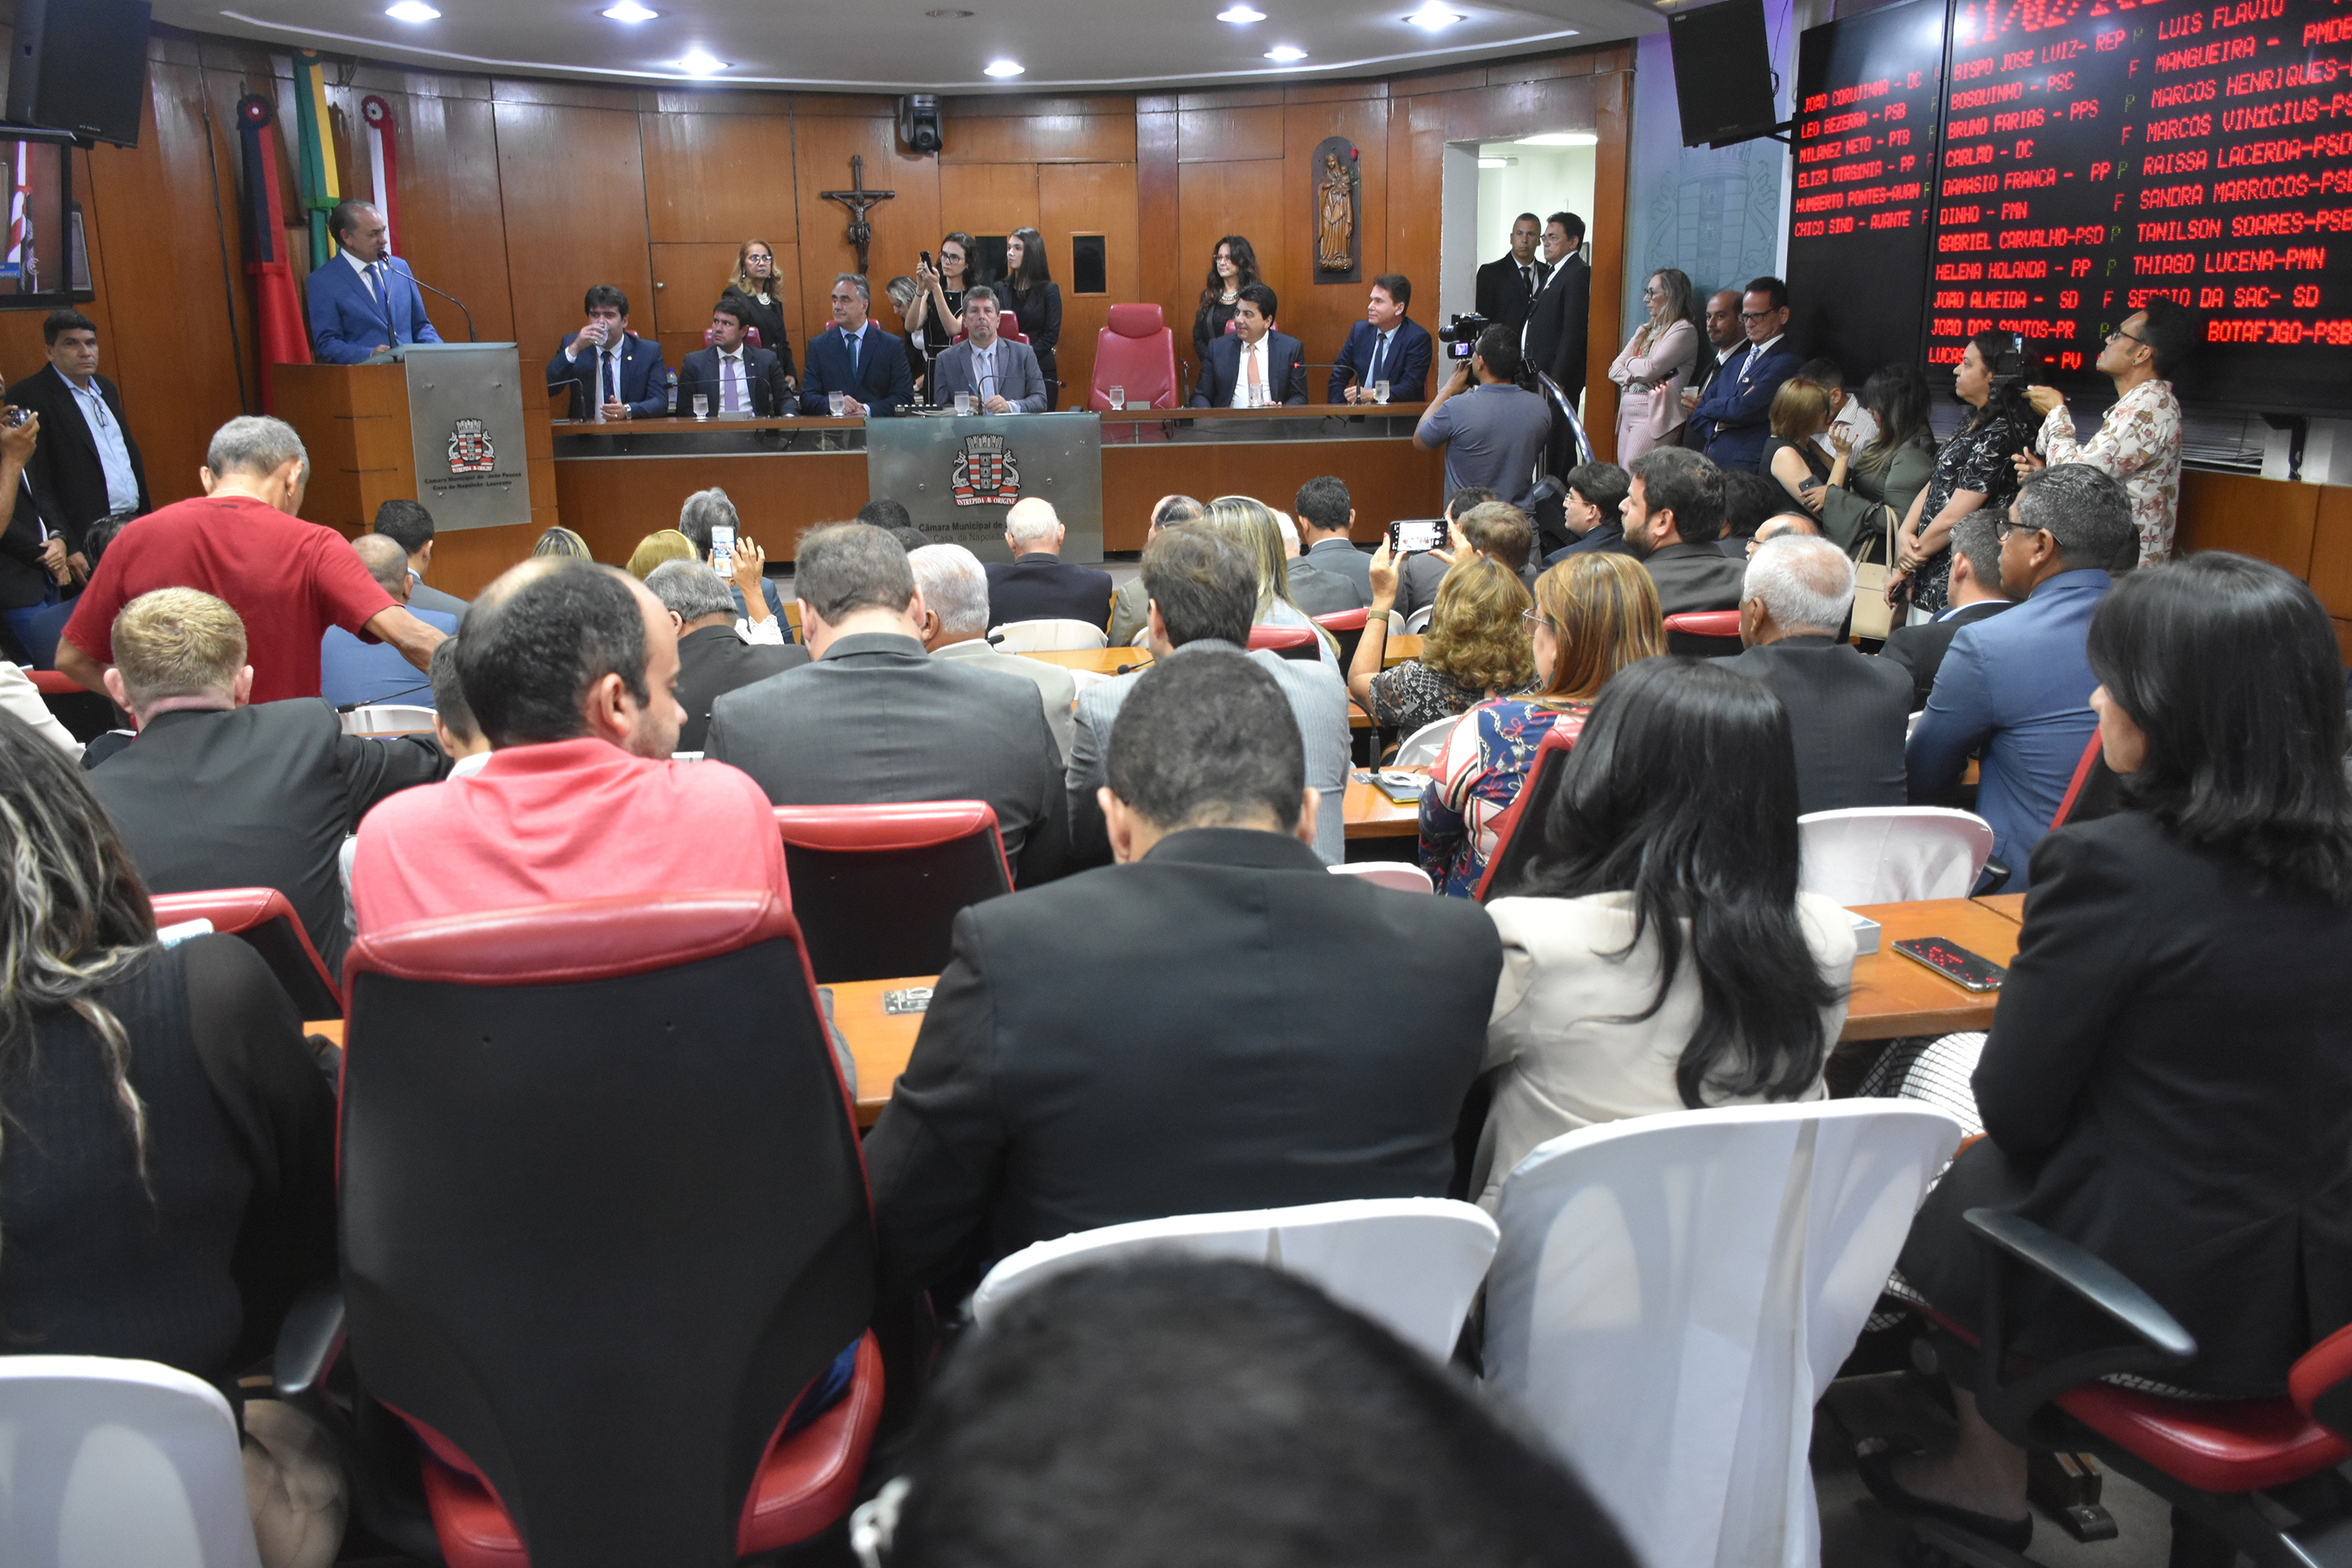 Câmara Municipal de João Pessoa inicia trabalhos legislativos de 2020 